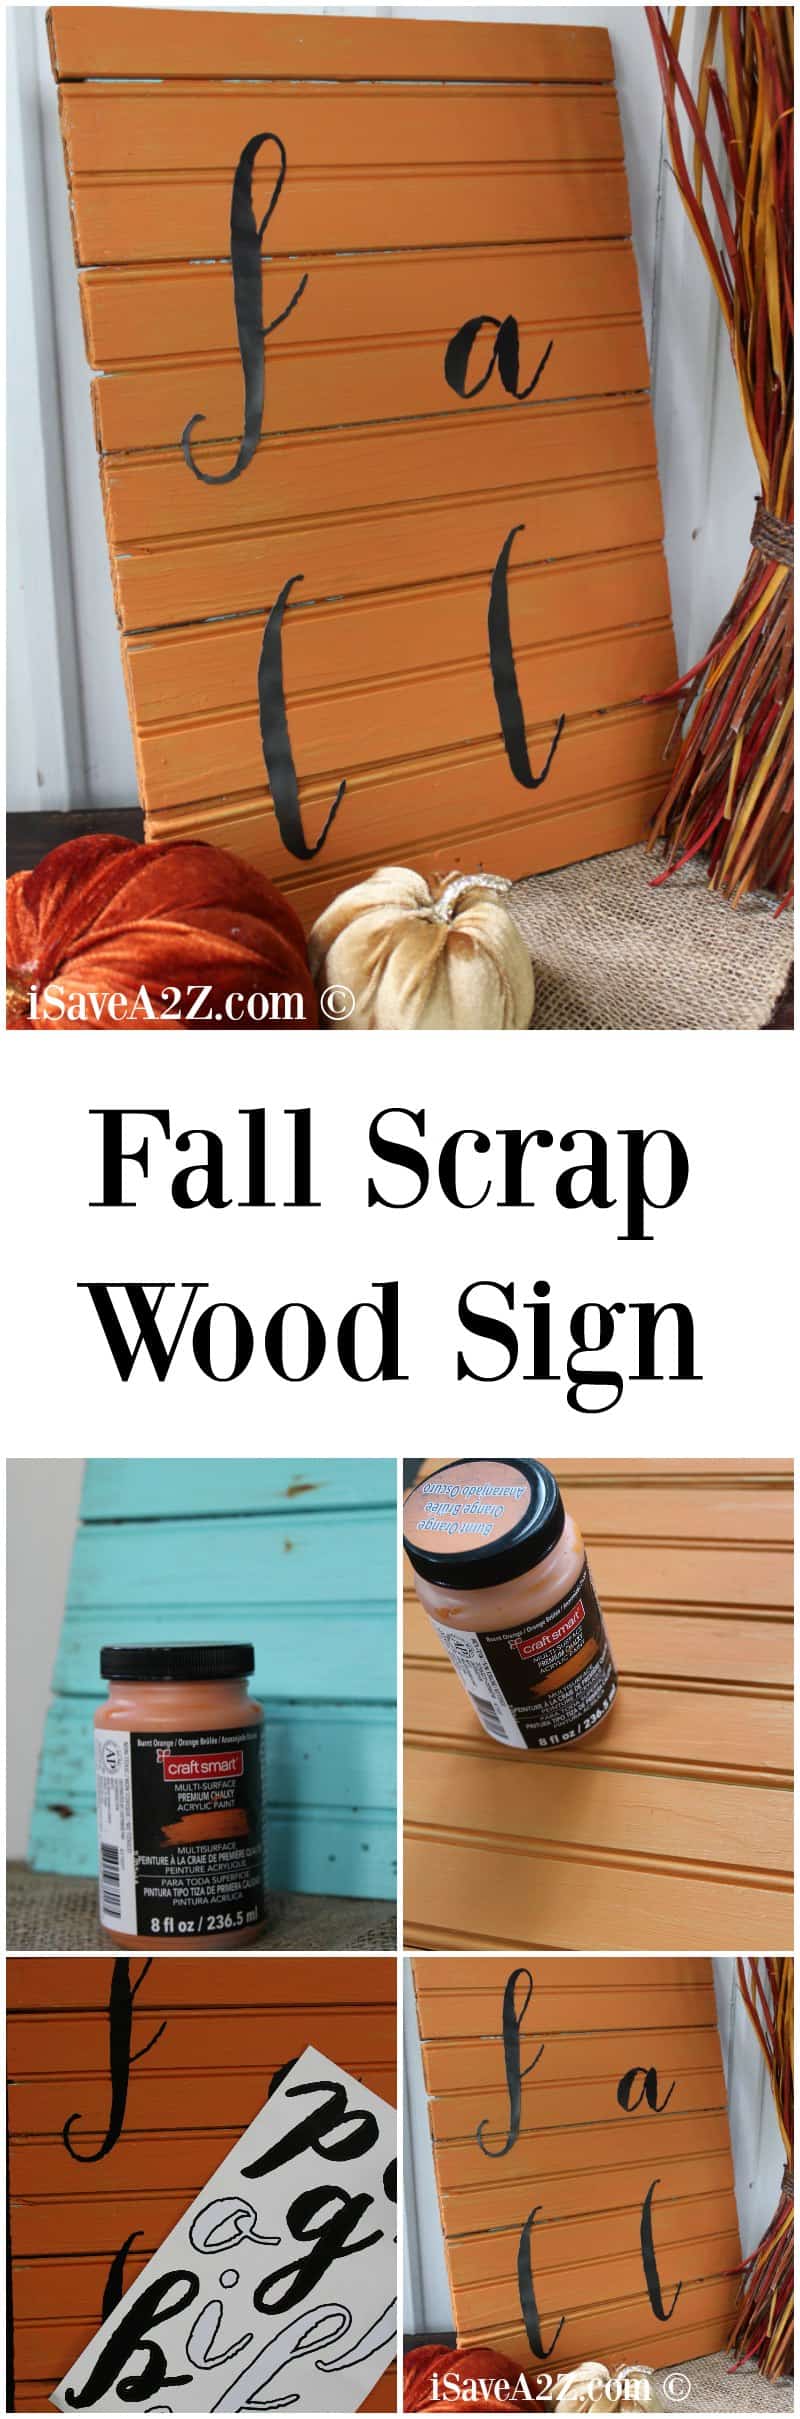 Scrap Wood Projects:  Fall Scrap Wood Sign